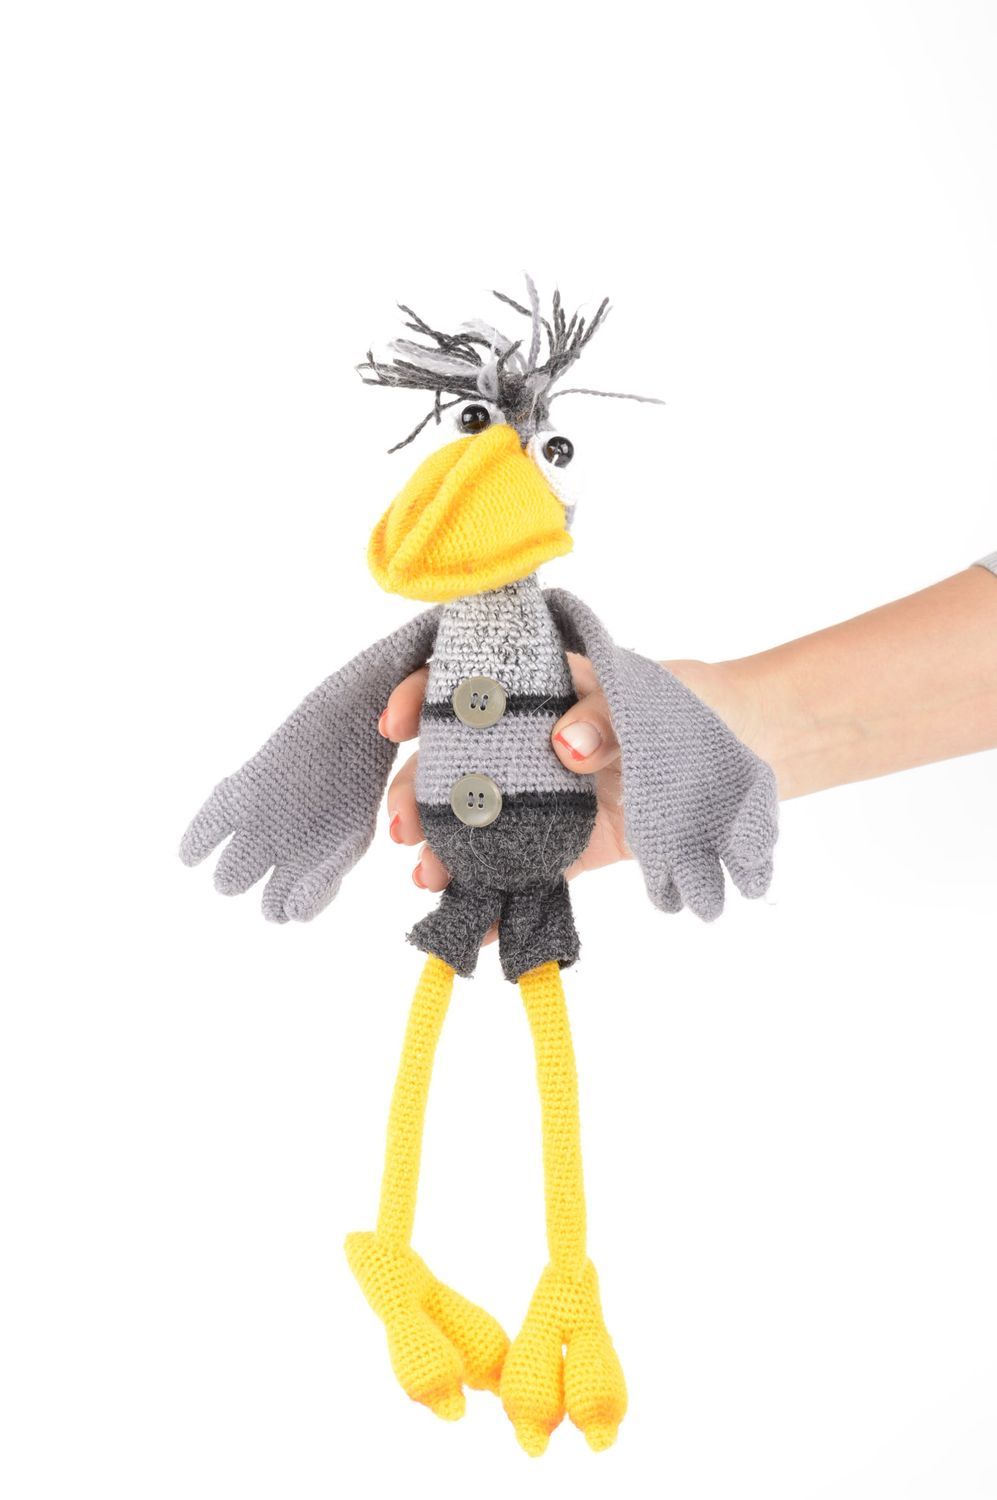 Игрушка ворона ручной работы мягкая игрушка вязаная детская игрушка красивая фото 5